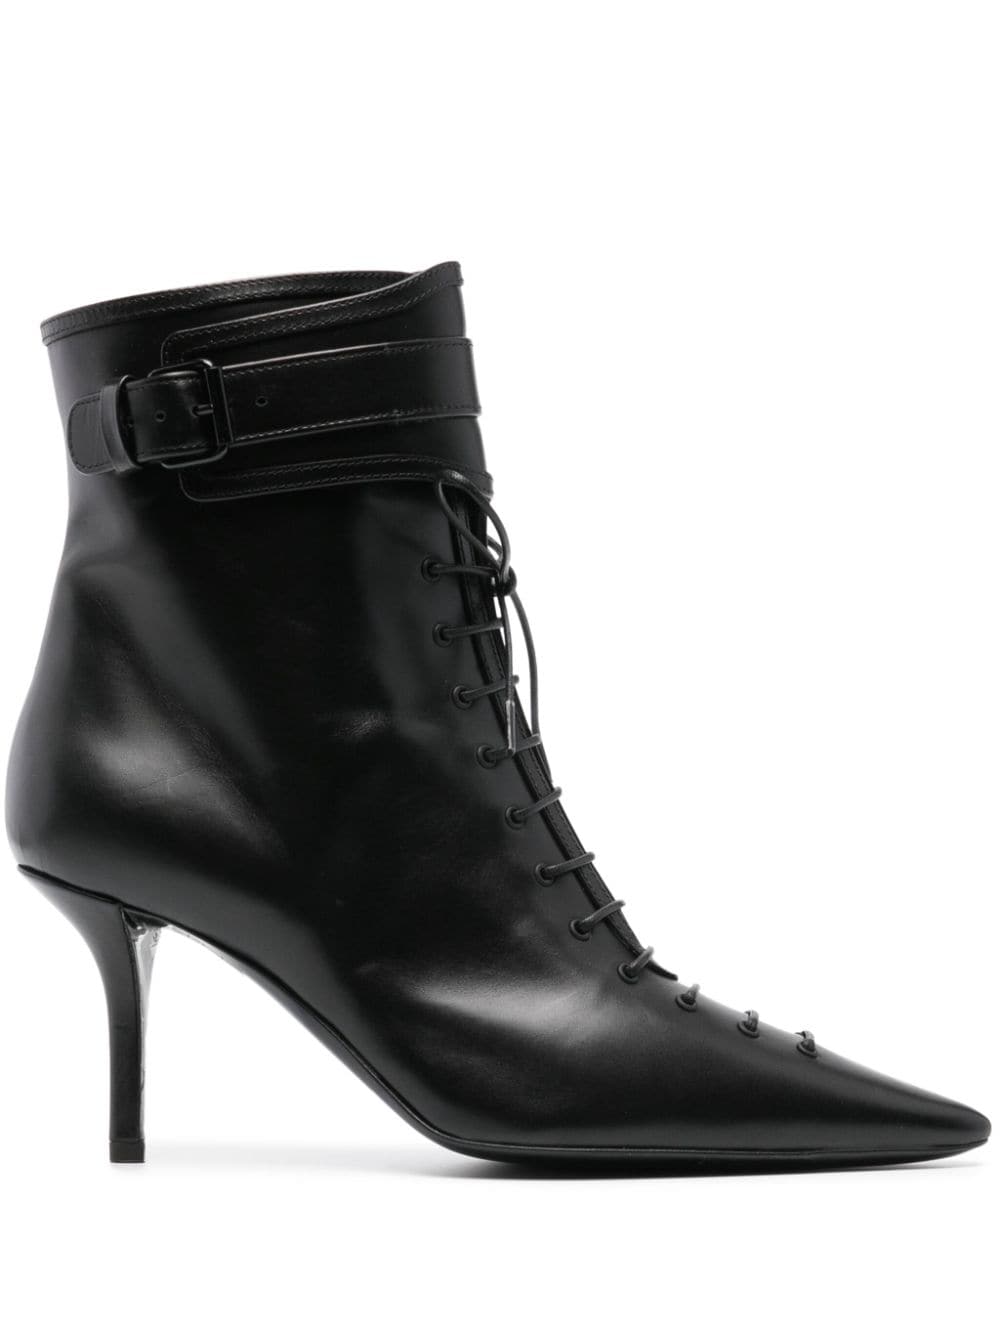 Philosophy Di Lorenzo Serafini 100mm leather ankle boots - Black von Philosophy Di Lorenzo Serafini